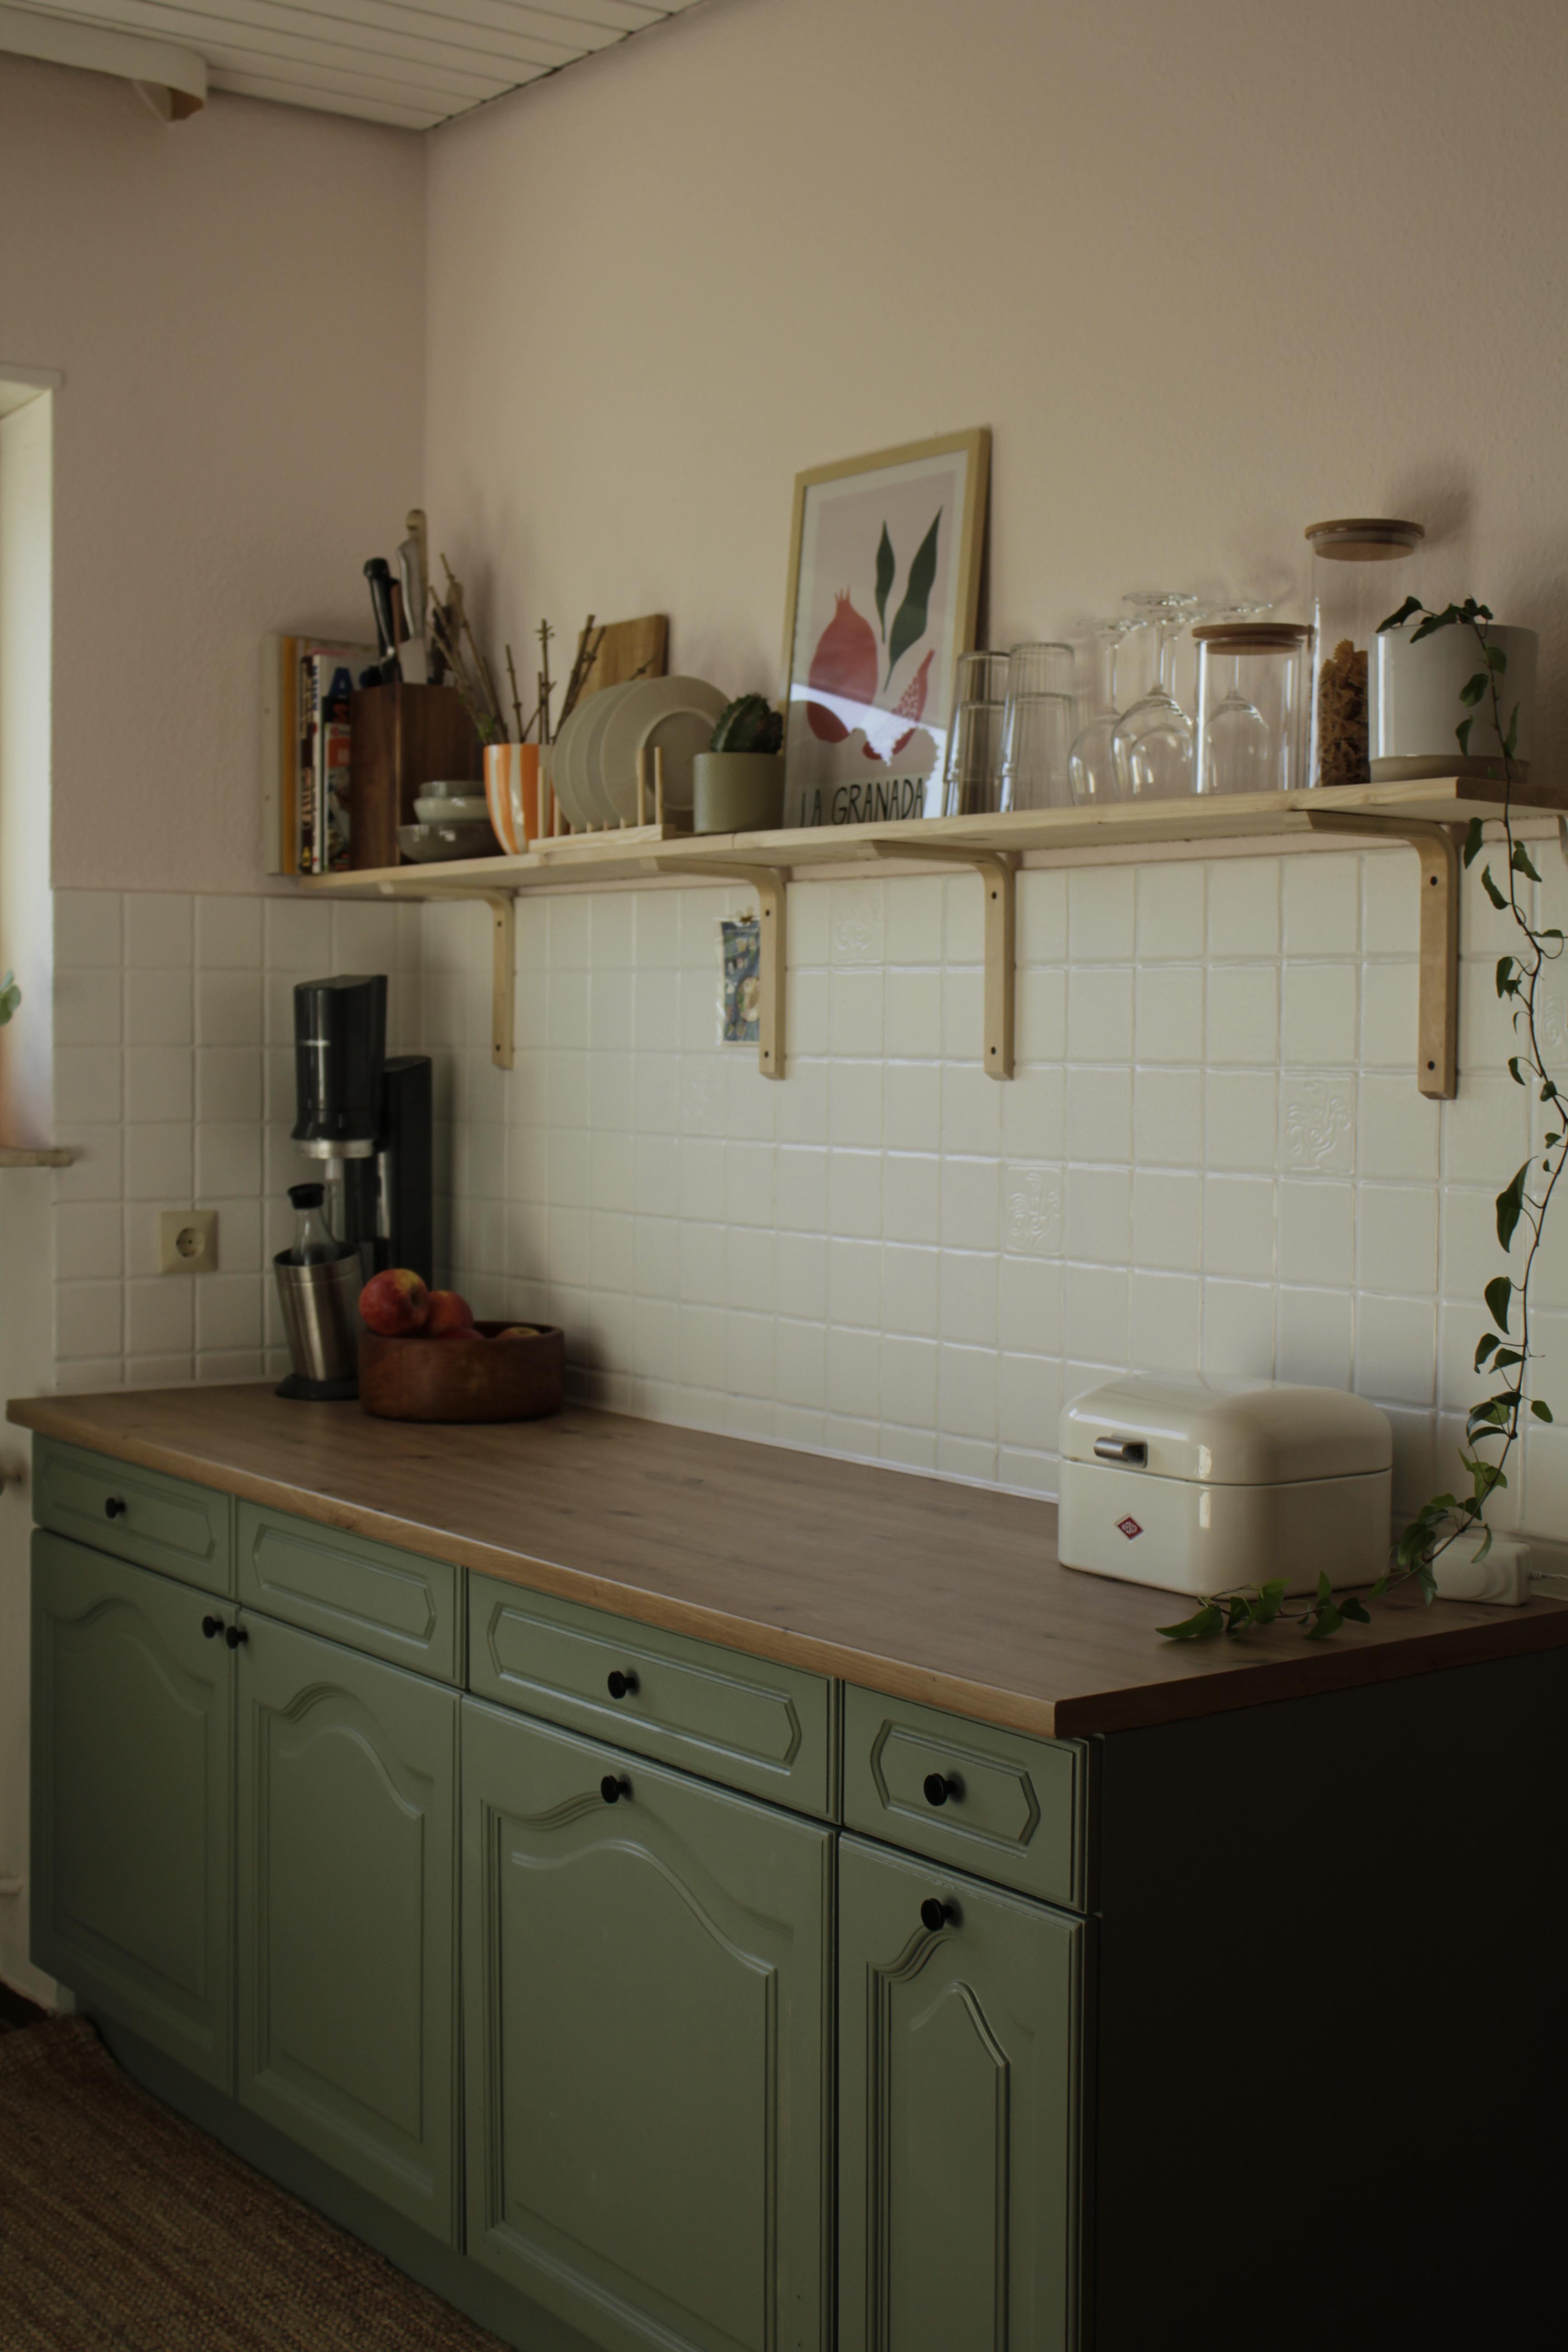 Wir sind so happy mit unserem Küchen-Makeover und können kaum fassen, wie groß der Raum auf einmal wirkt 😍